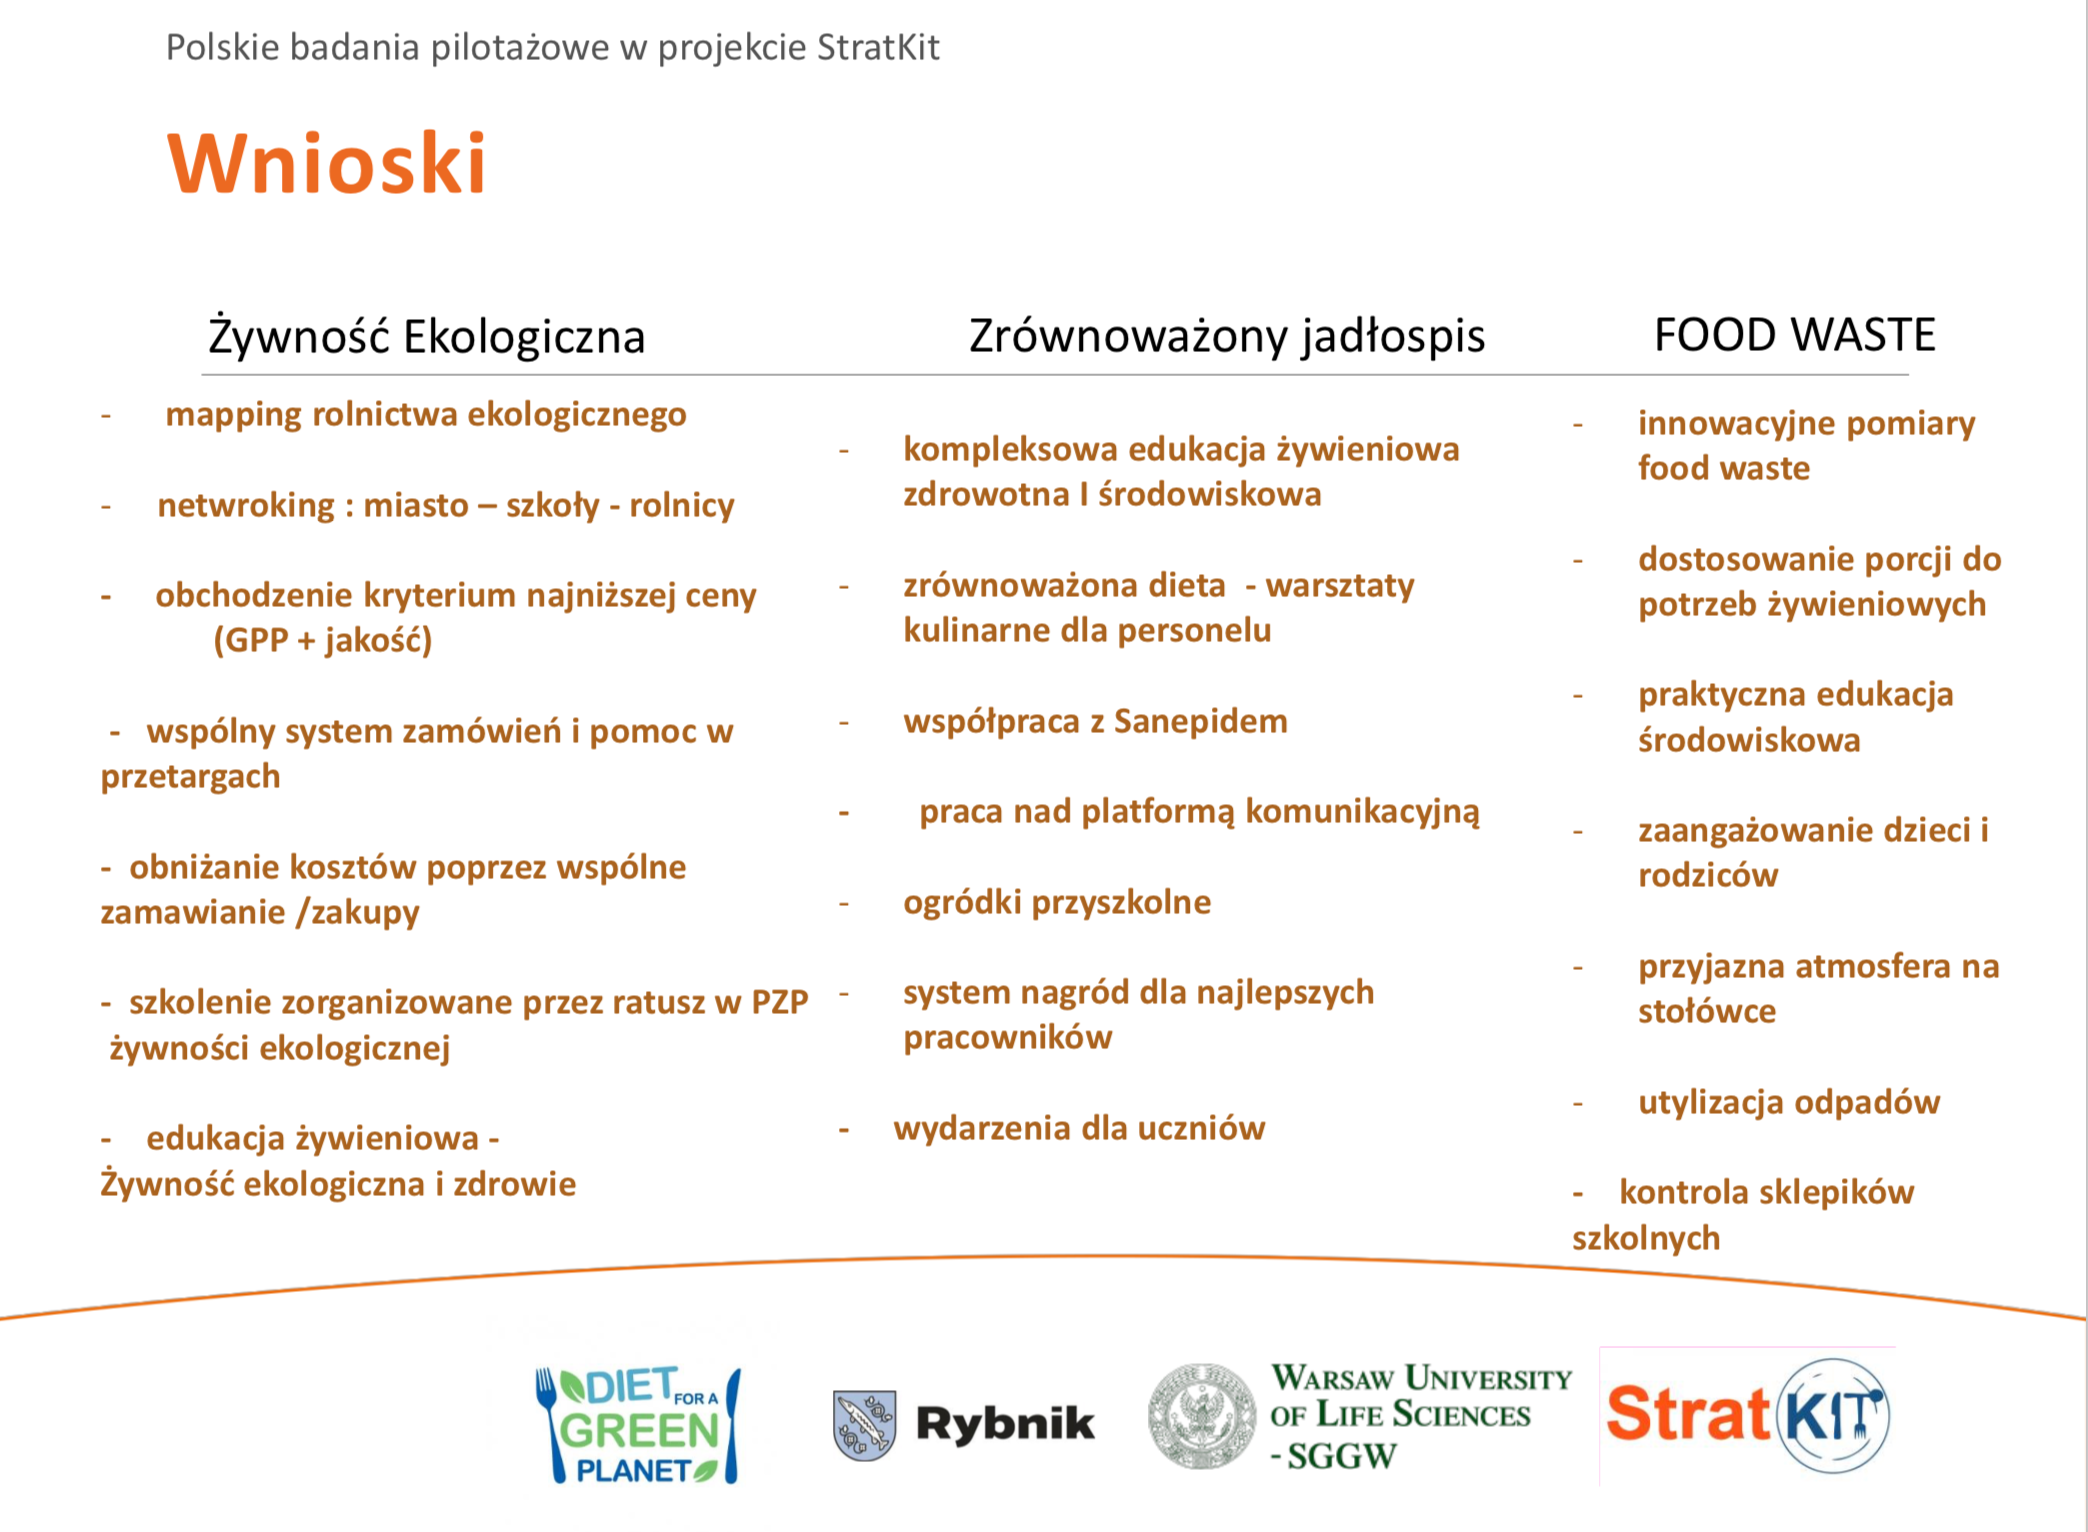 hipoalergiczni-Dzialania-projektu-StratKIT-ref-zrownowazonej-diety_Rita-Goralska-Walczak